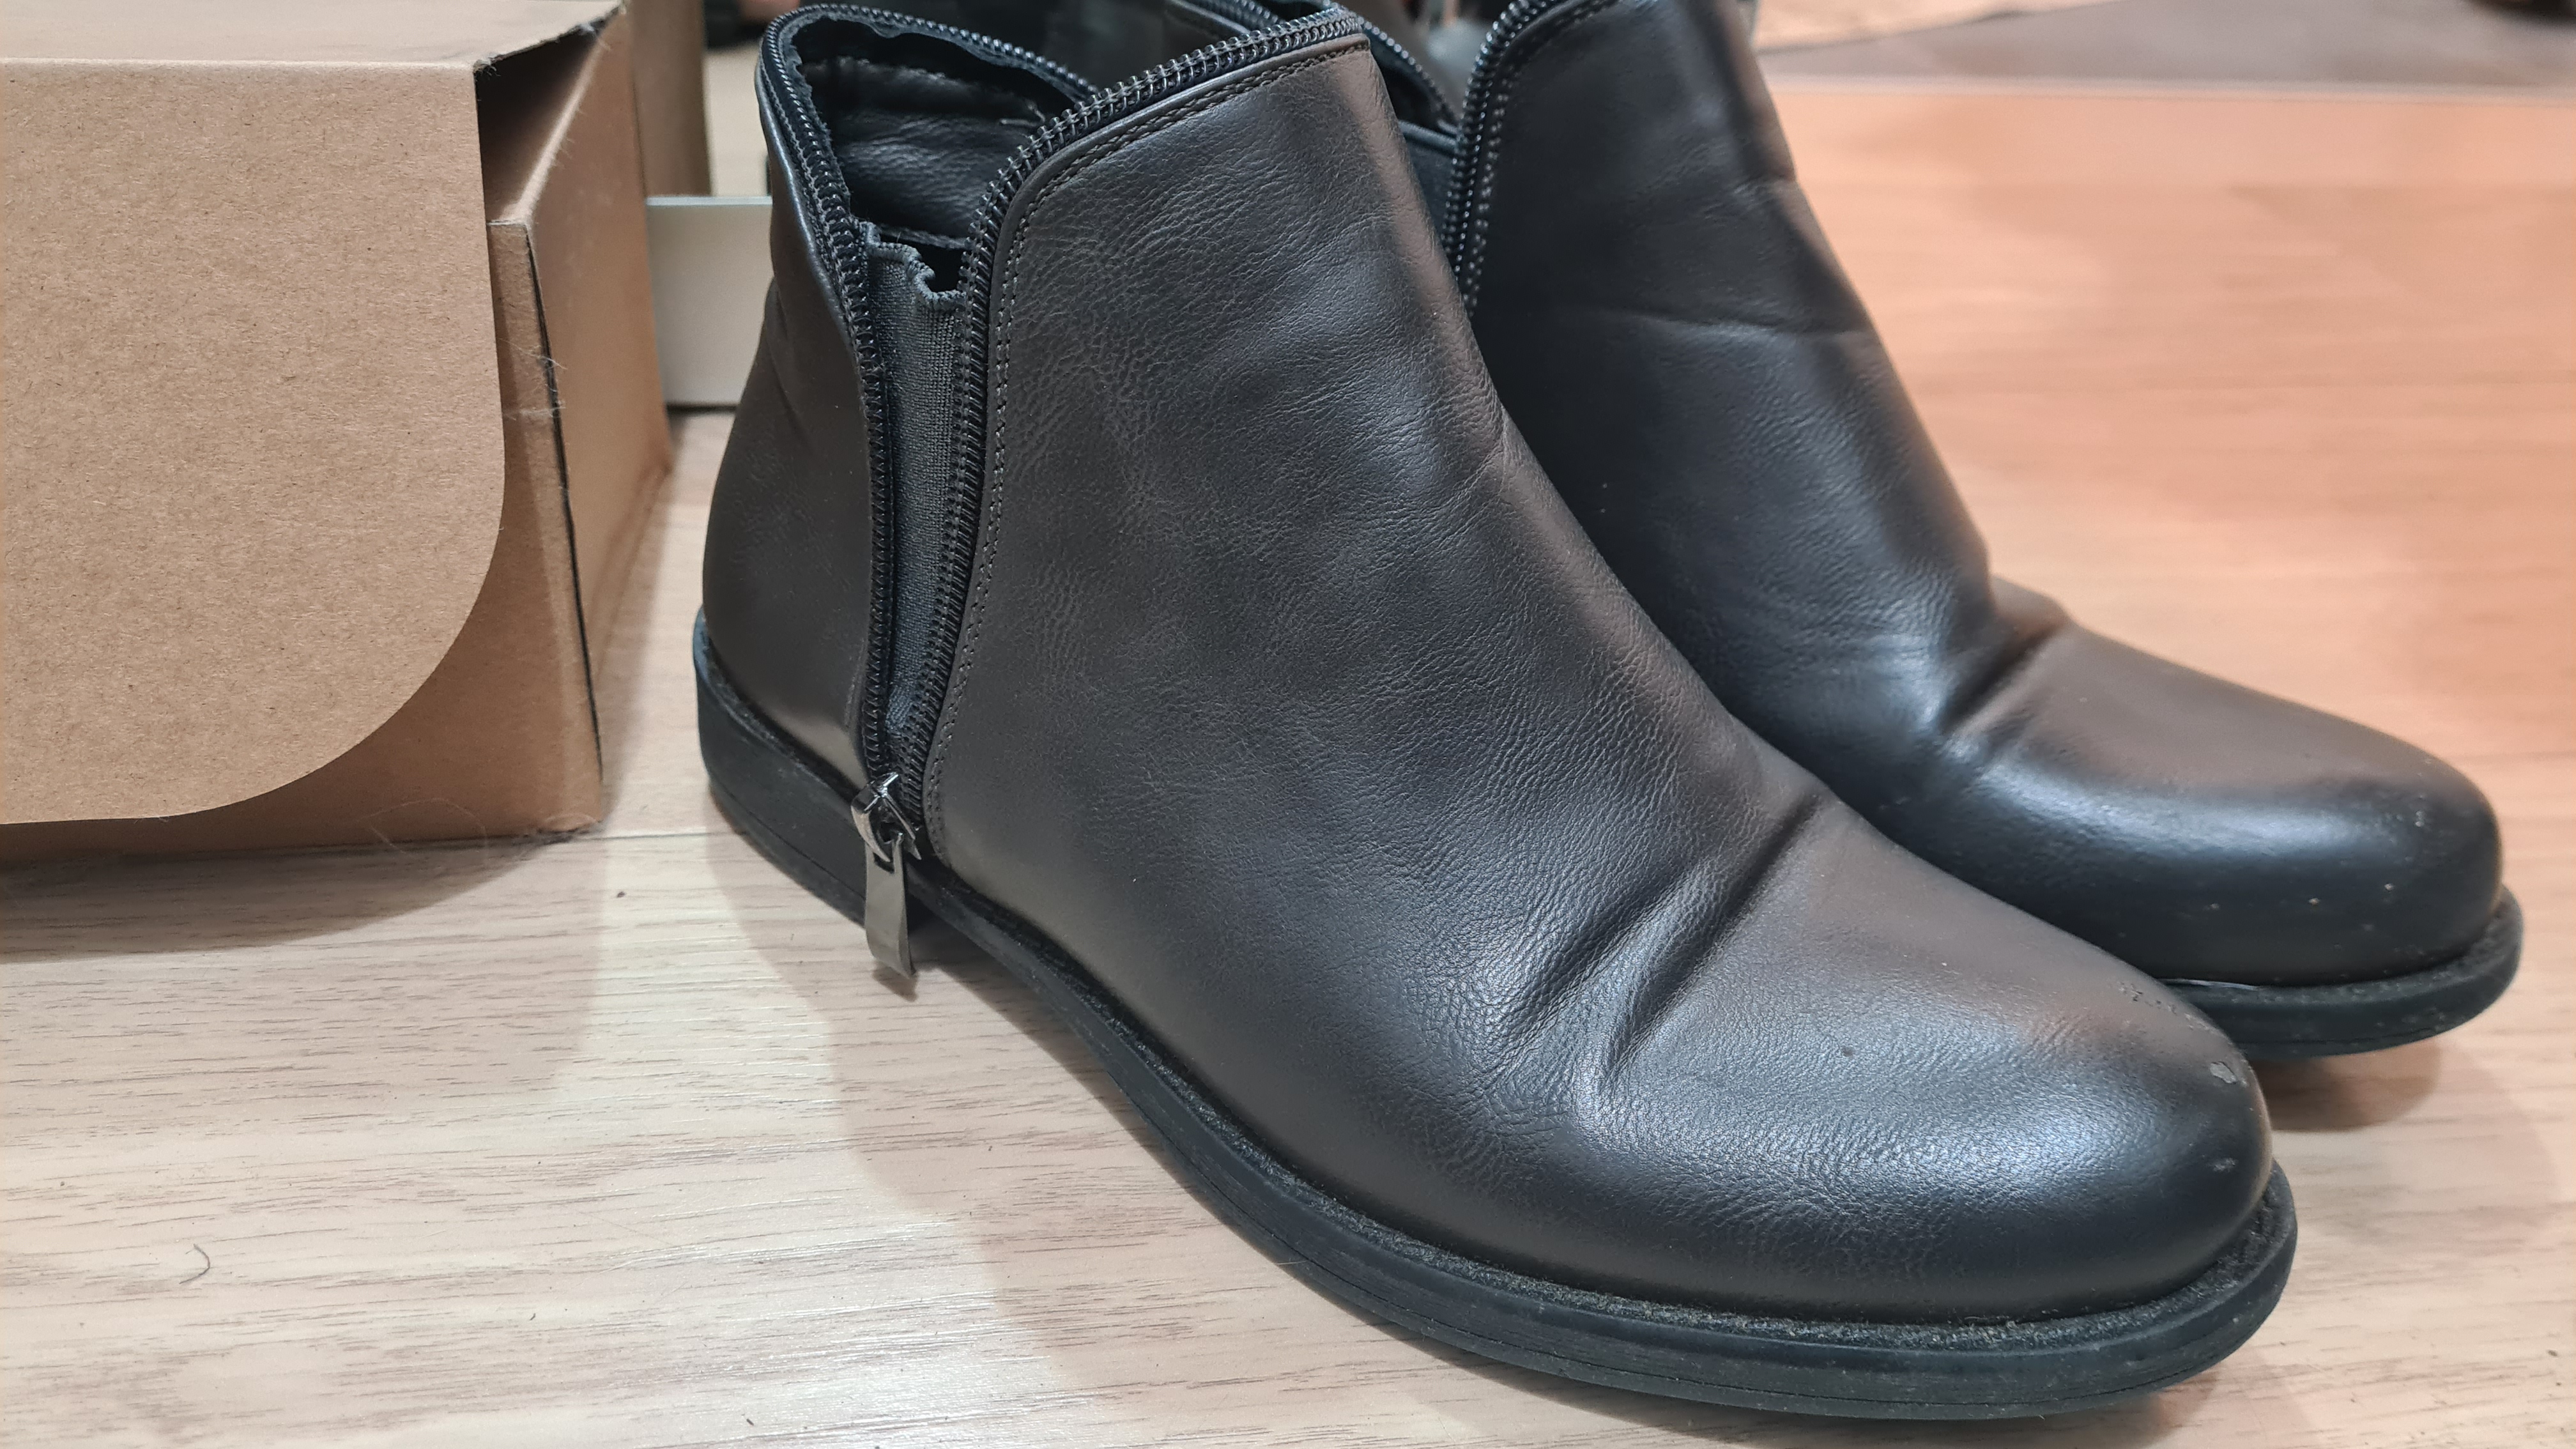 תמונה 6 ,נעליים למכירה בתל אביב יד-שניה לנשים  שונות